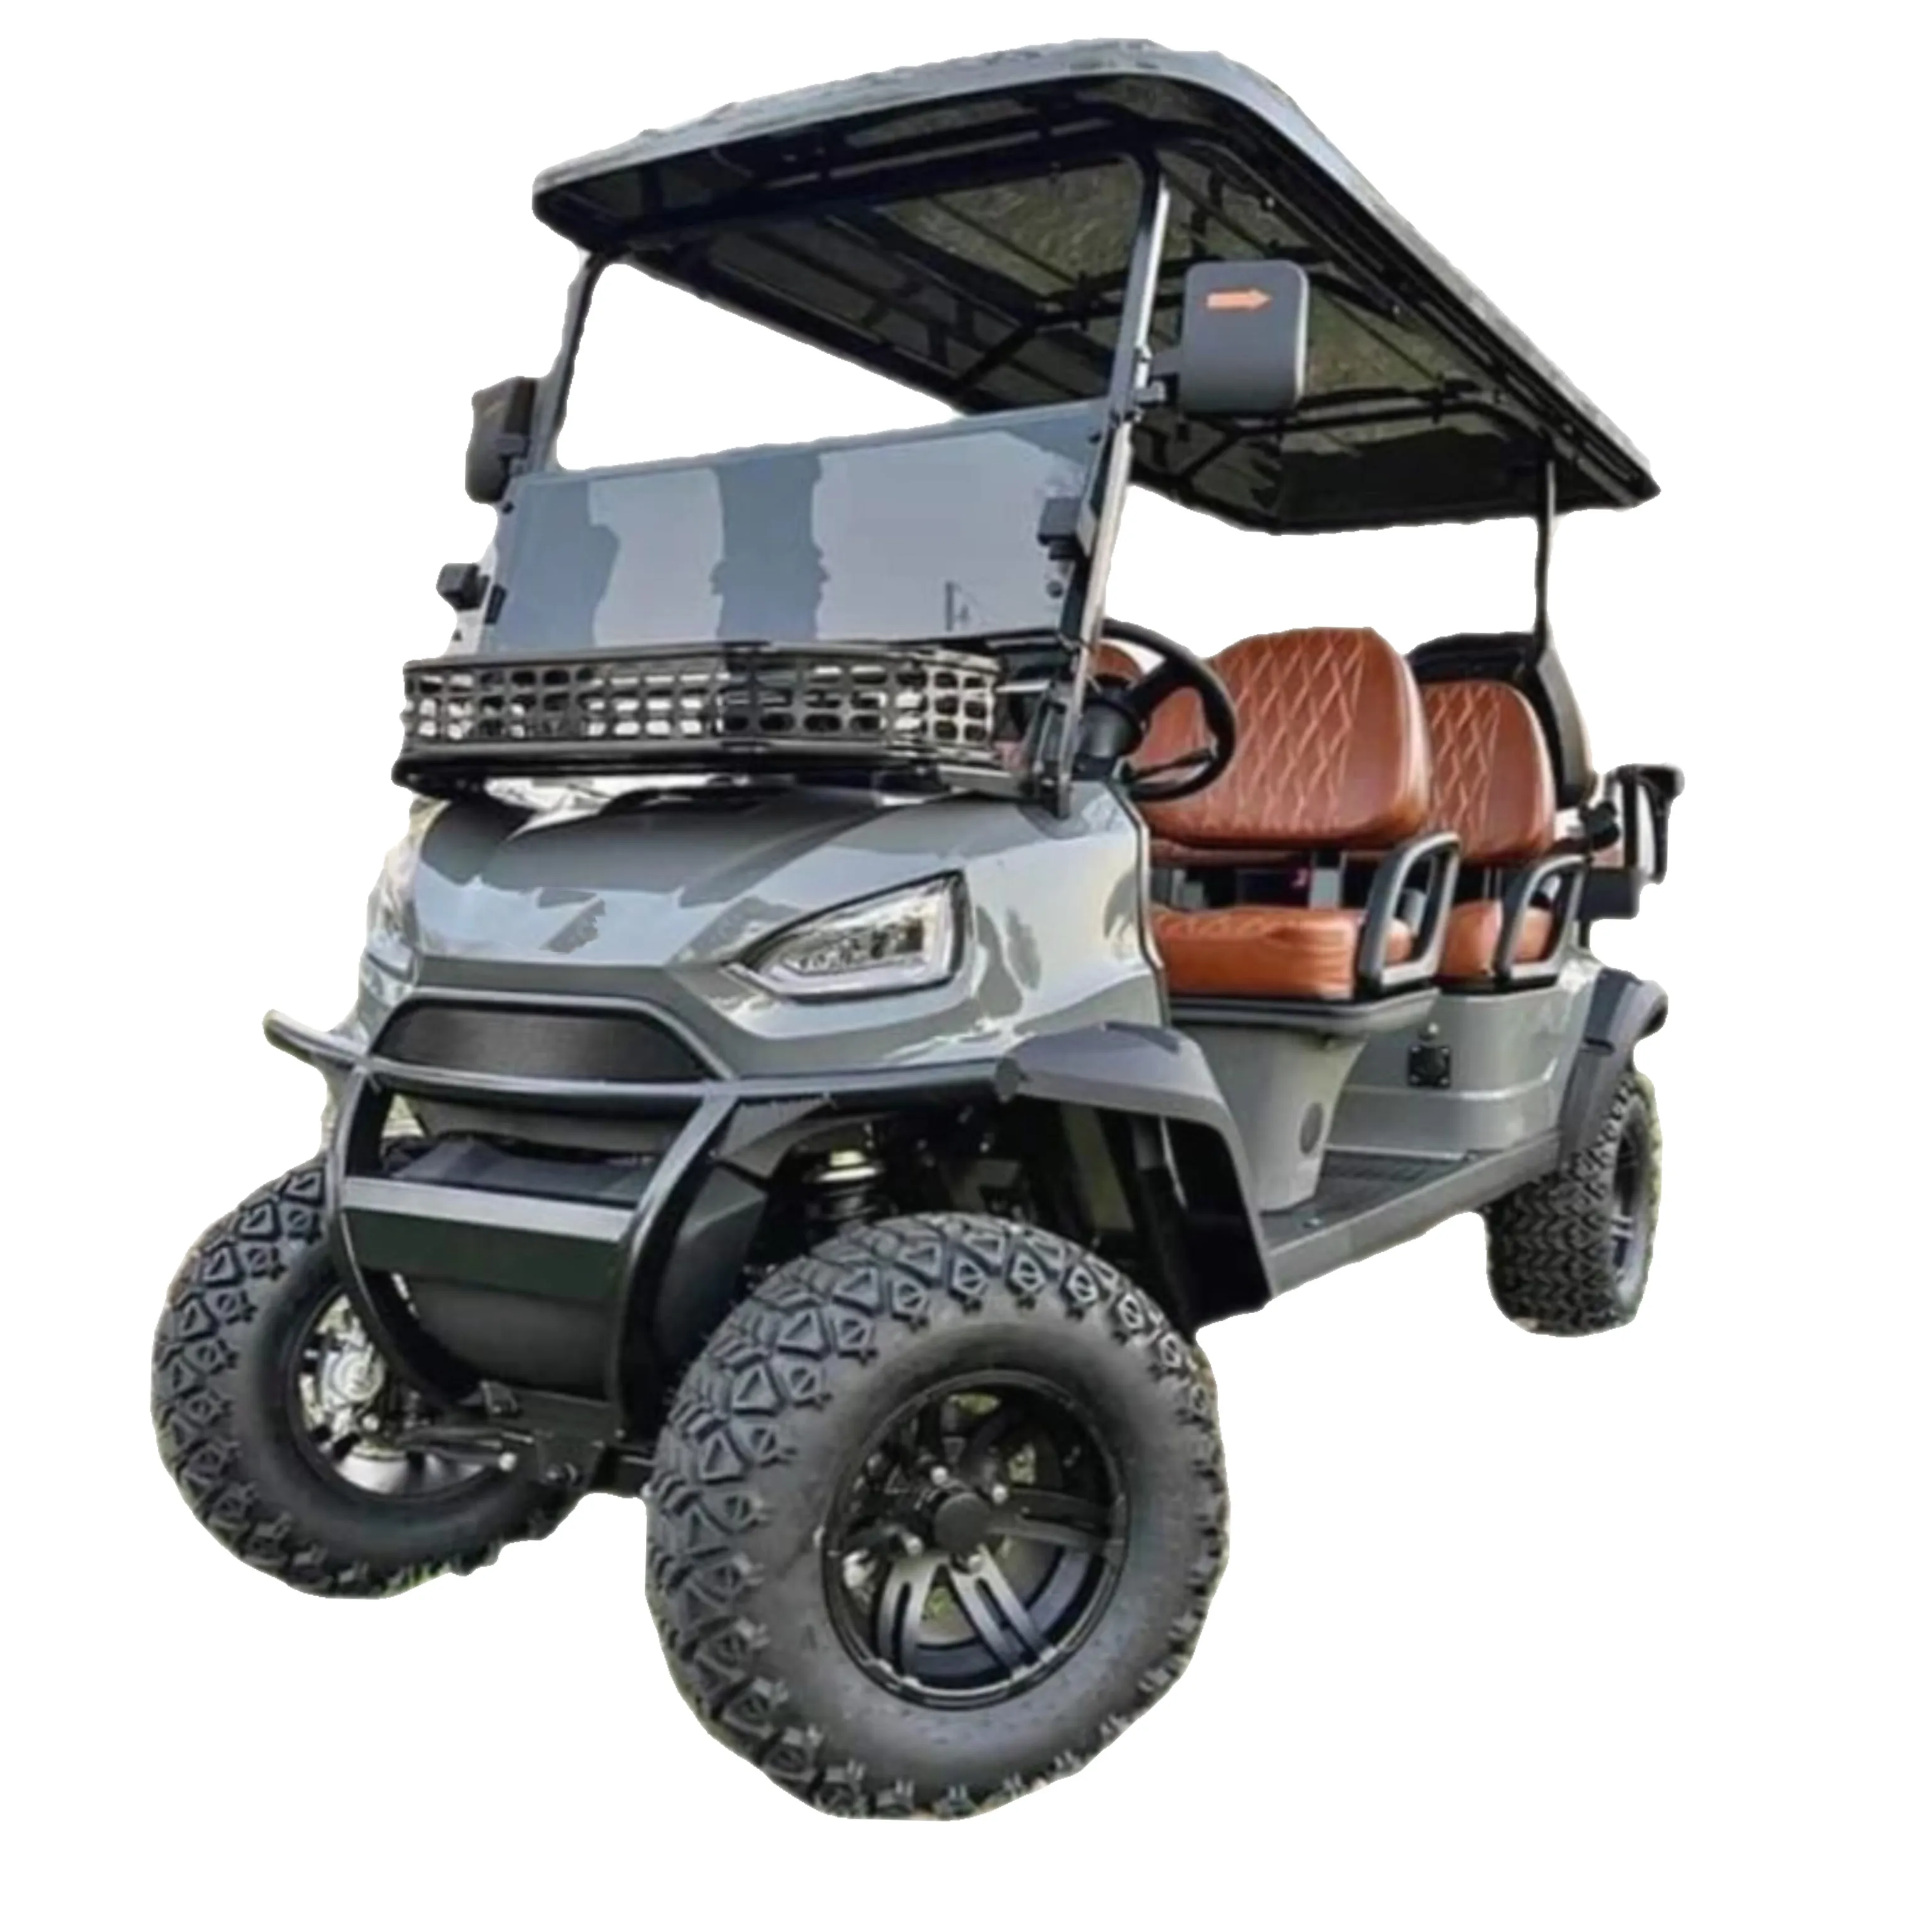 4Kw 48v150ah 12 inch off-road lốp Powered Golf điện giỏ hàng để bán với giấy chứng nhận CE